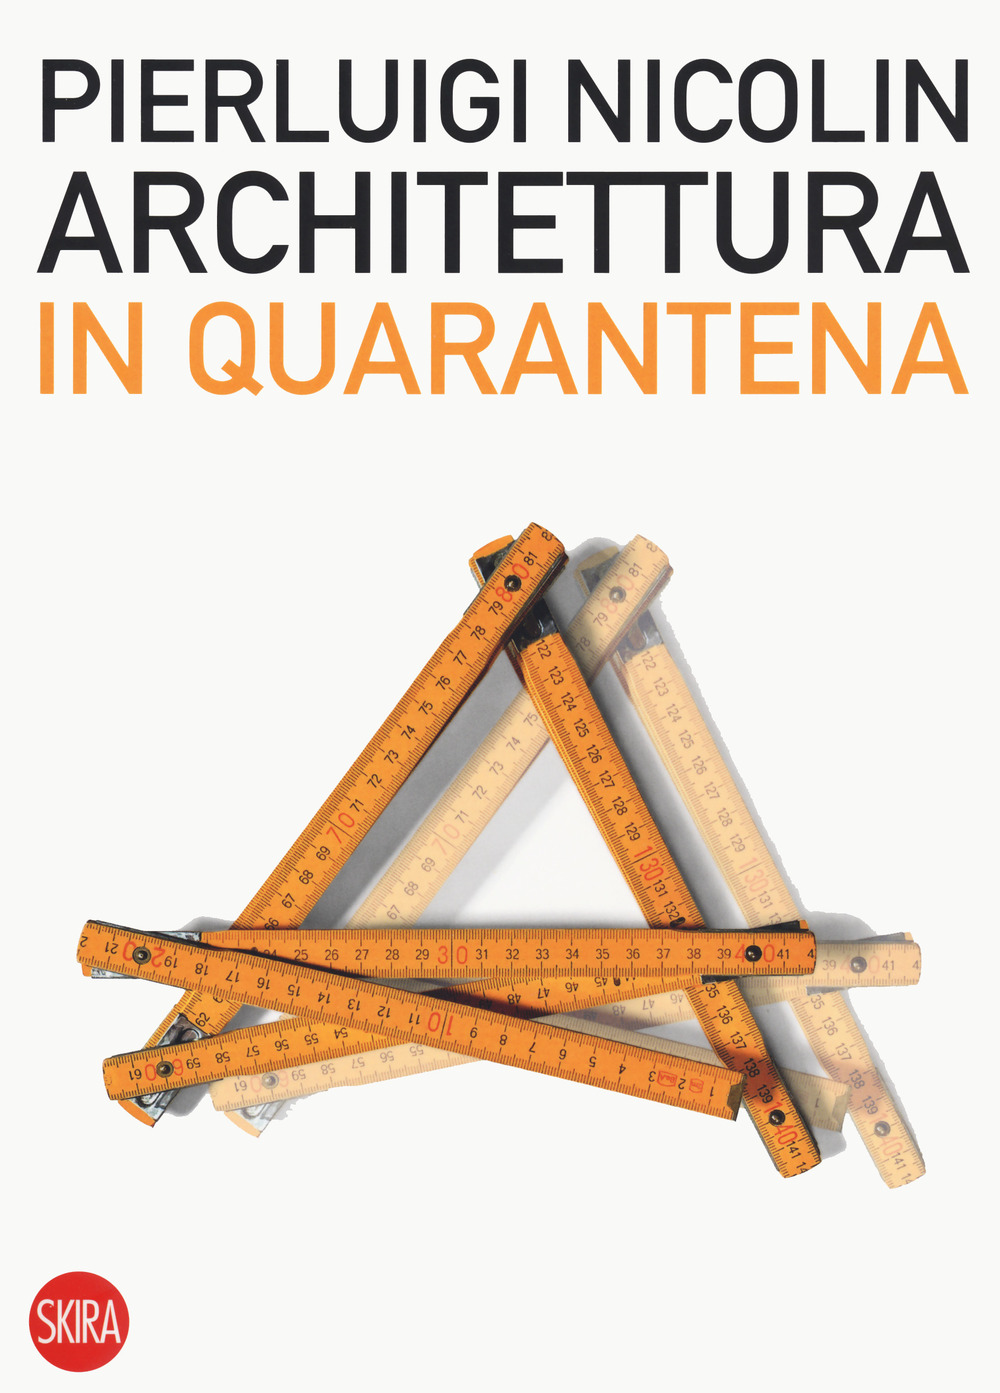 Image of Architettura in quarantena